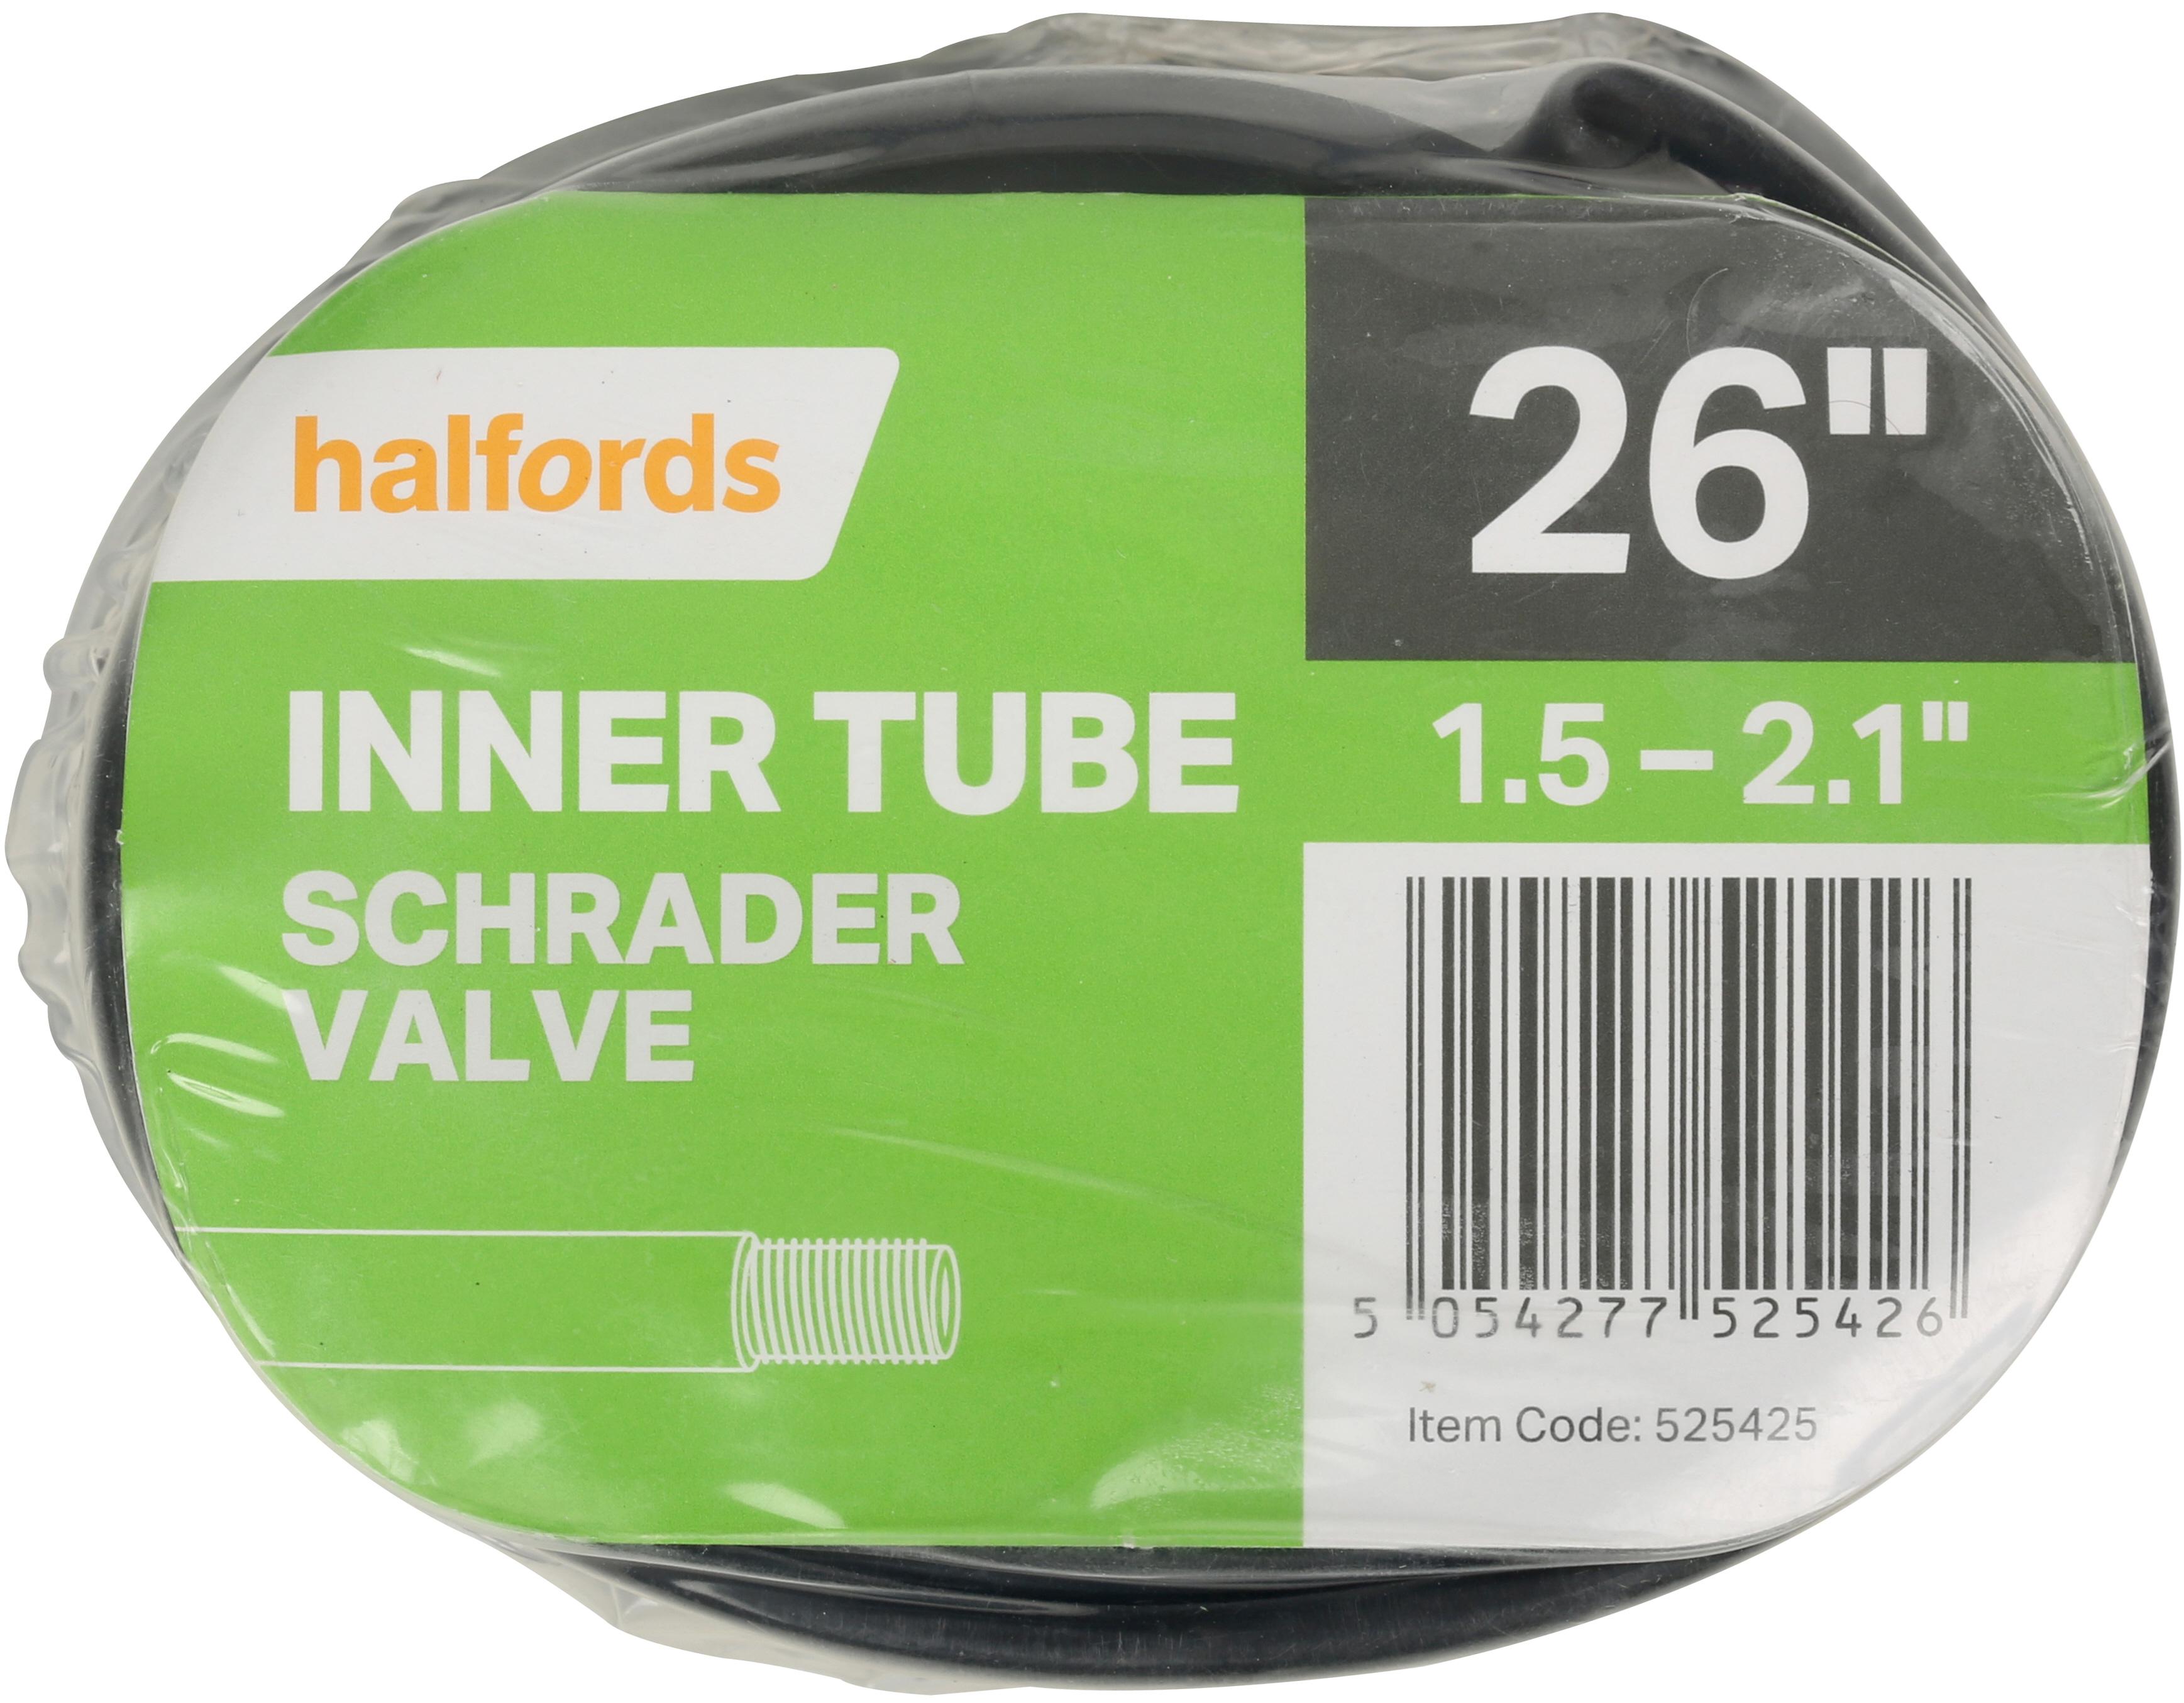 Halfords Bike Inner Tube, 26 Inch X 1.5 - 2.1 Inch, Schrader